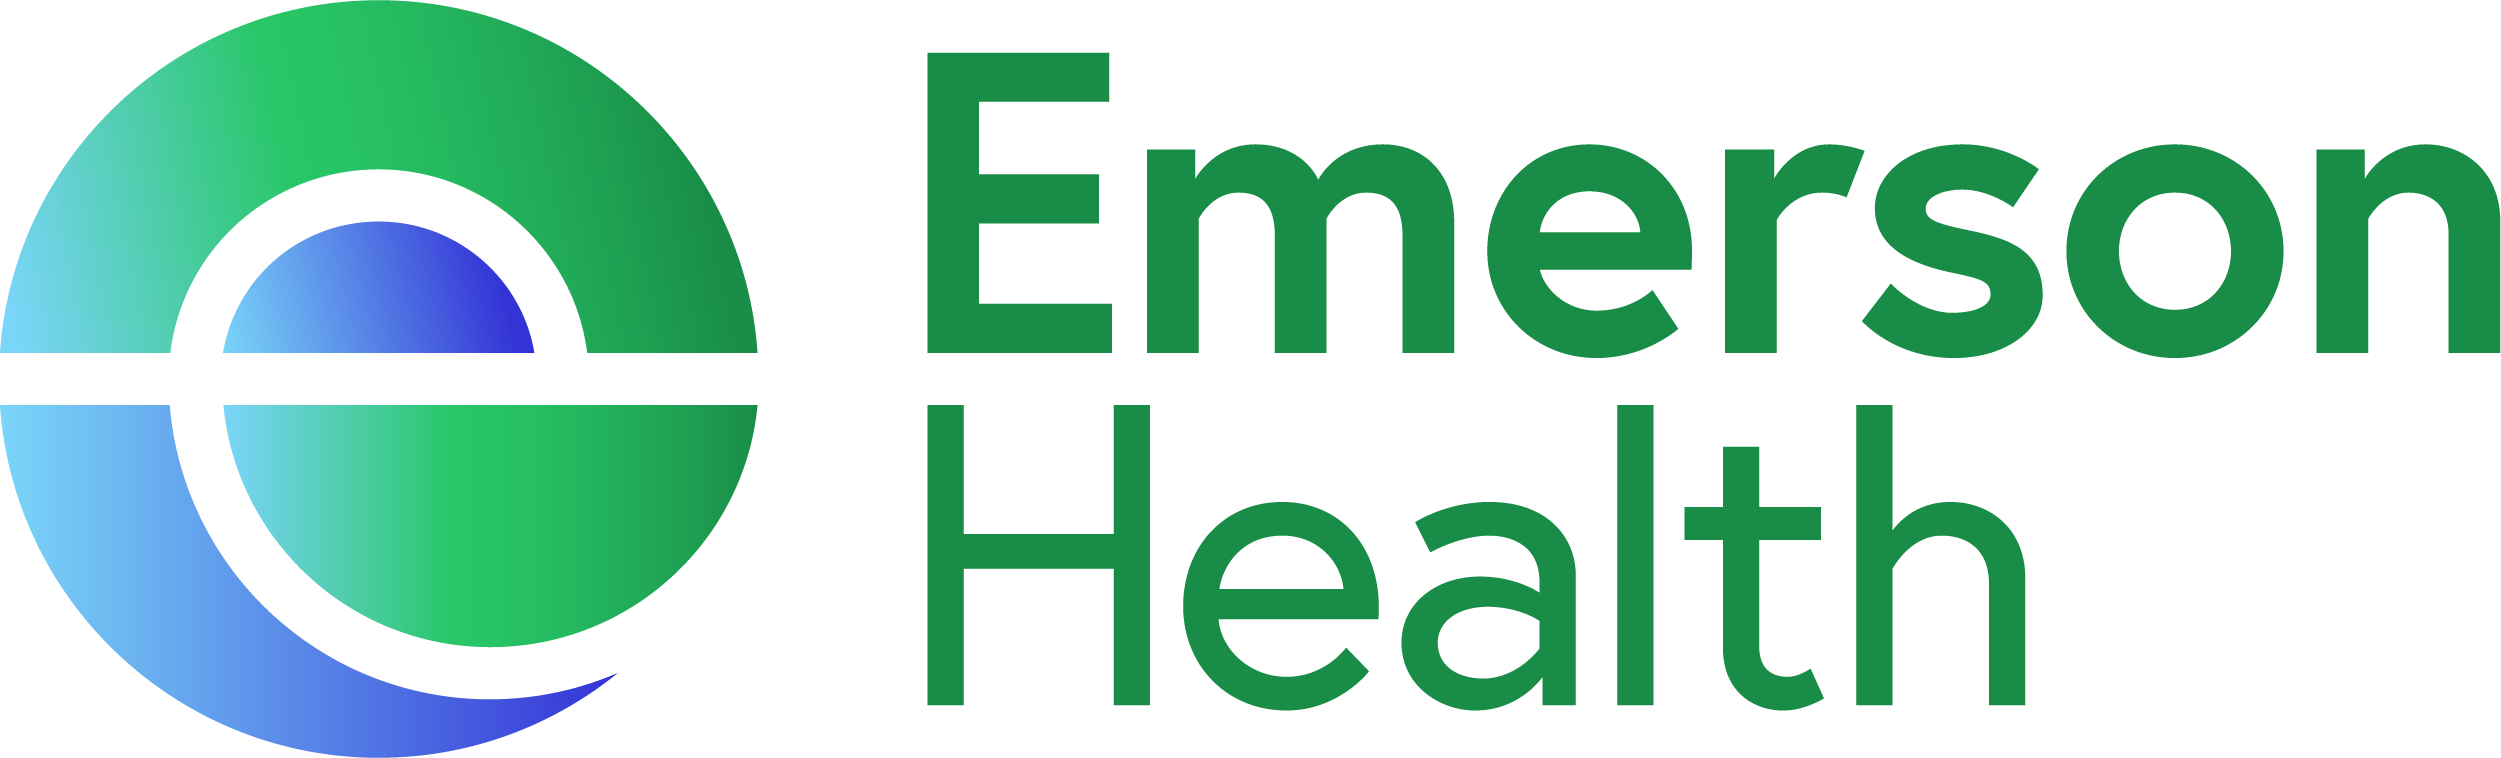 Emerson Hospital logo